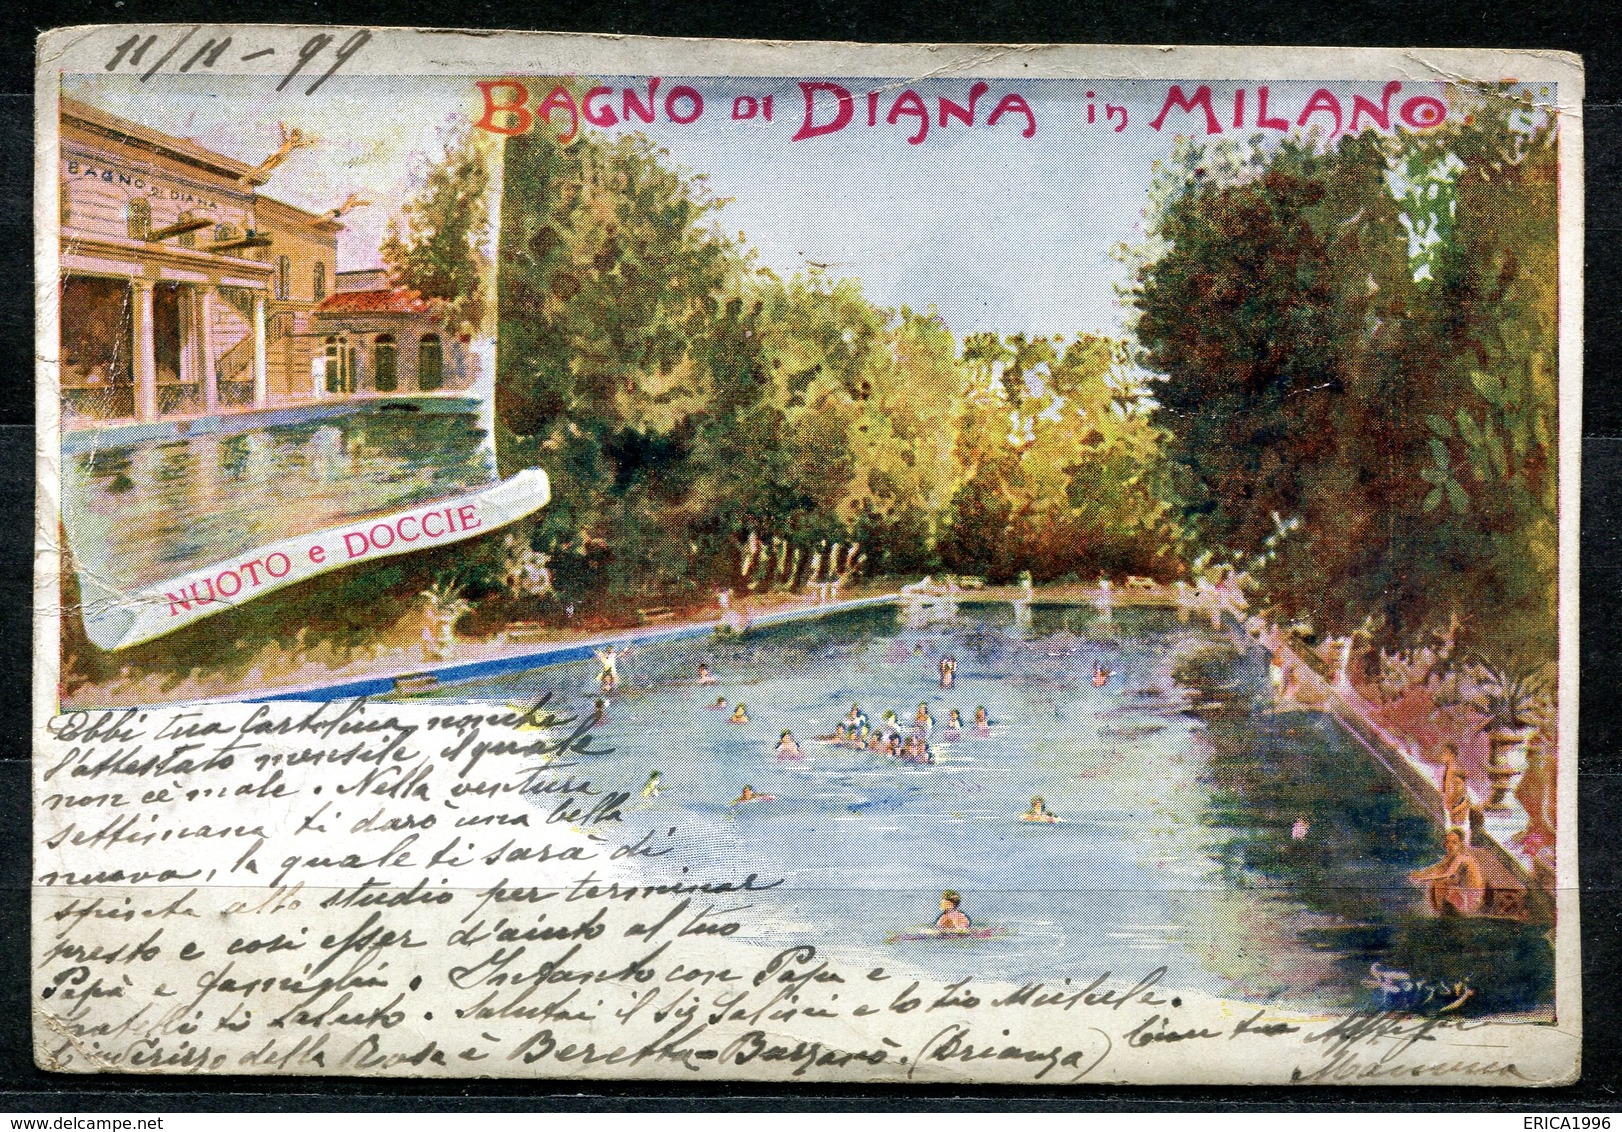 CV2759 MILANO (MI) Bagno Di Diana, Nuoto E Docce, Cartolina Tipo Gruss, FP, Viaggiata 1899 Per La Svizzera, Pieghine Var - Milano (Milan)